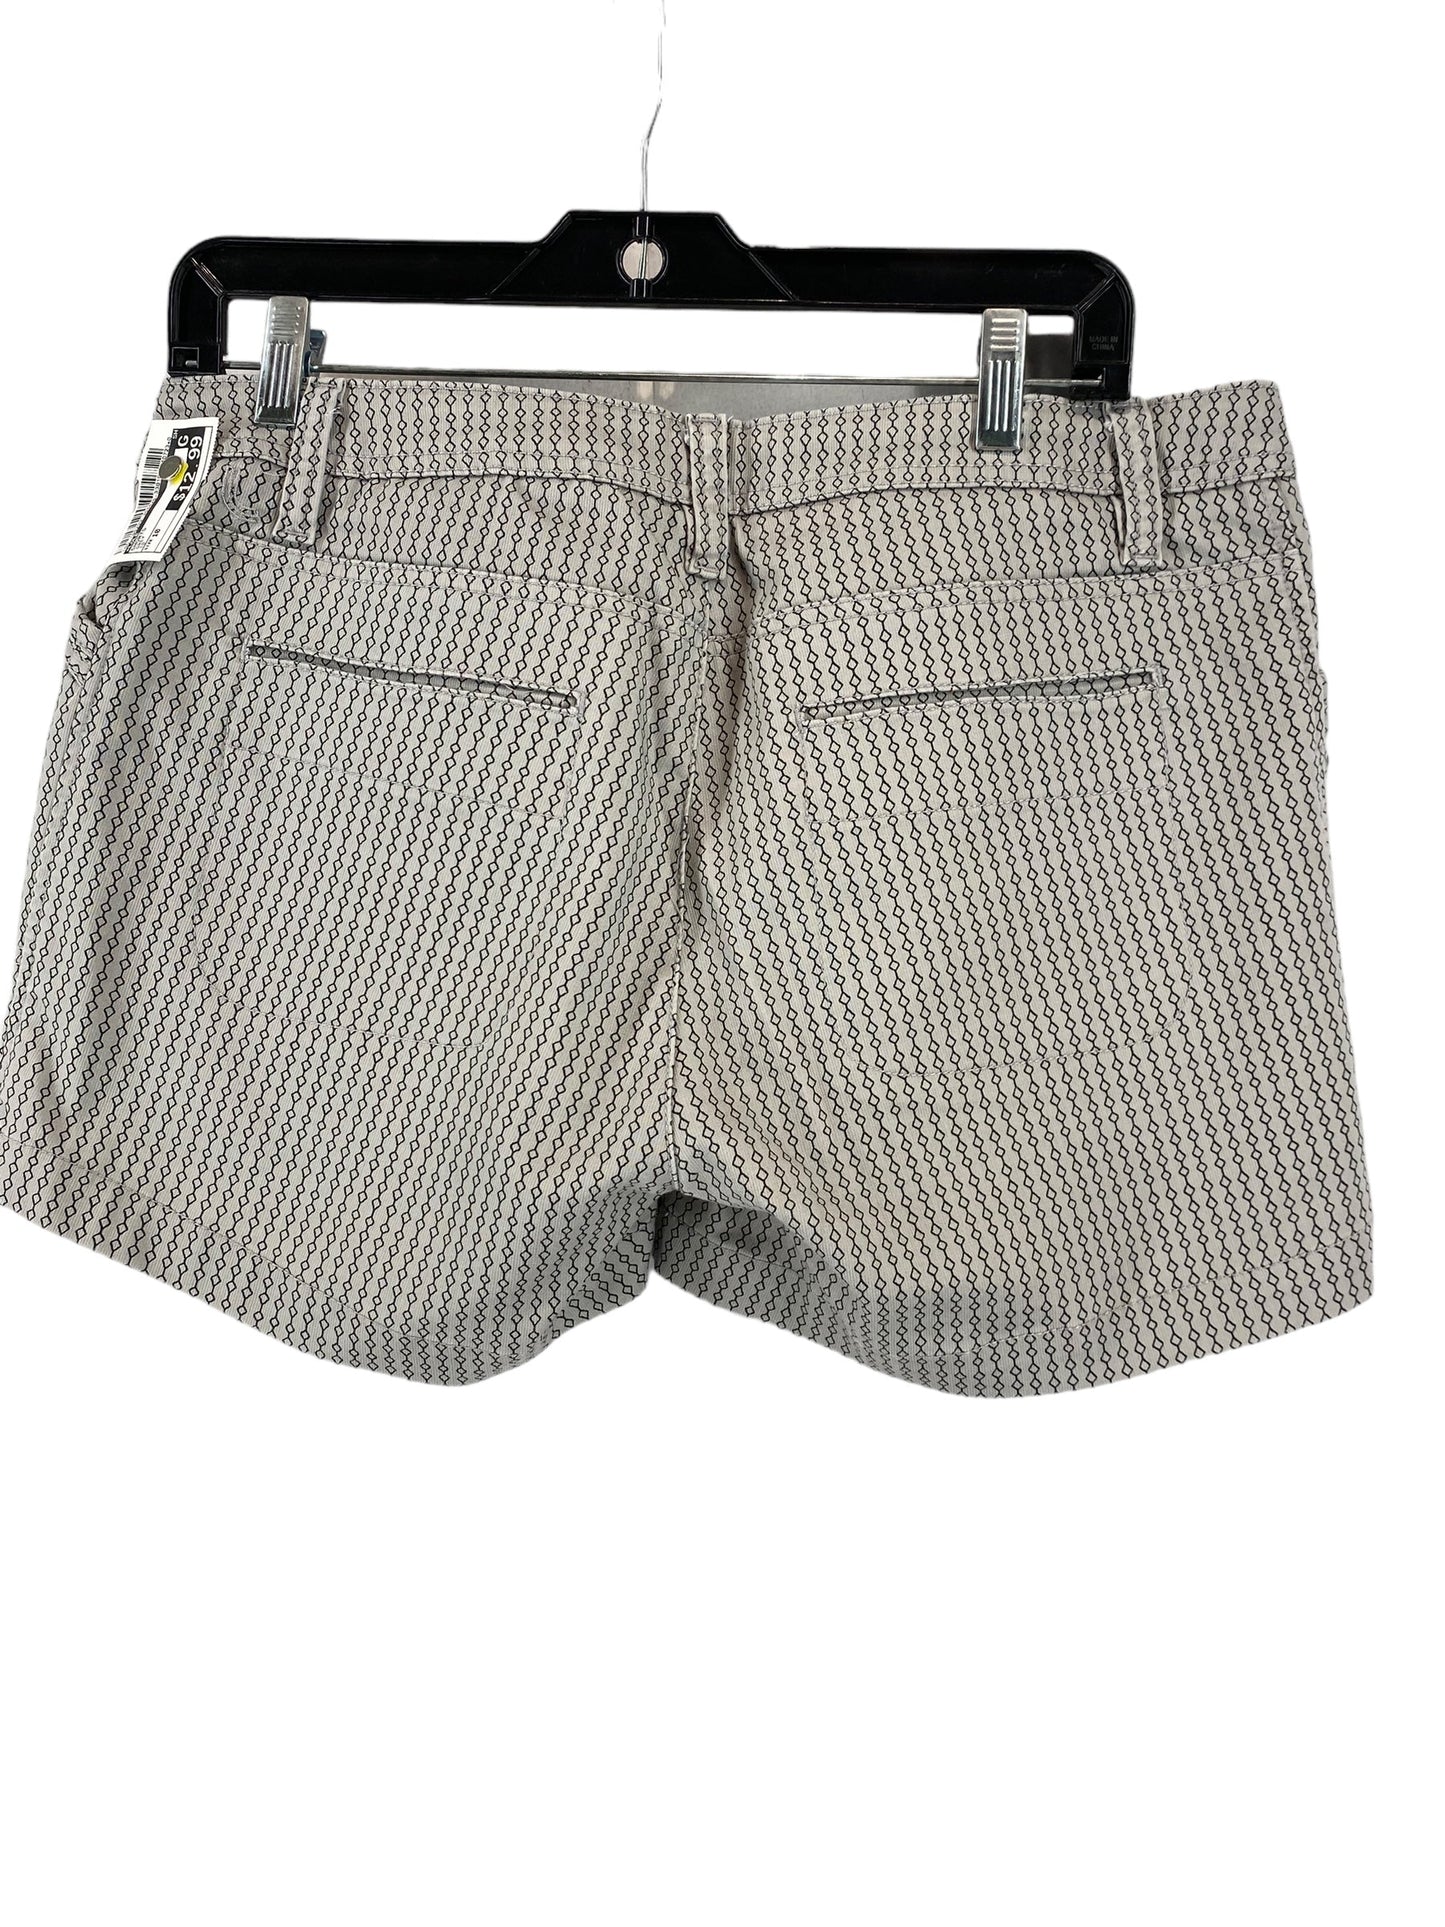 Grey Shorts Lole, Size 10